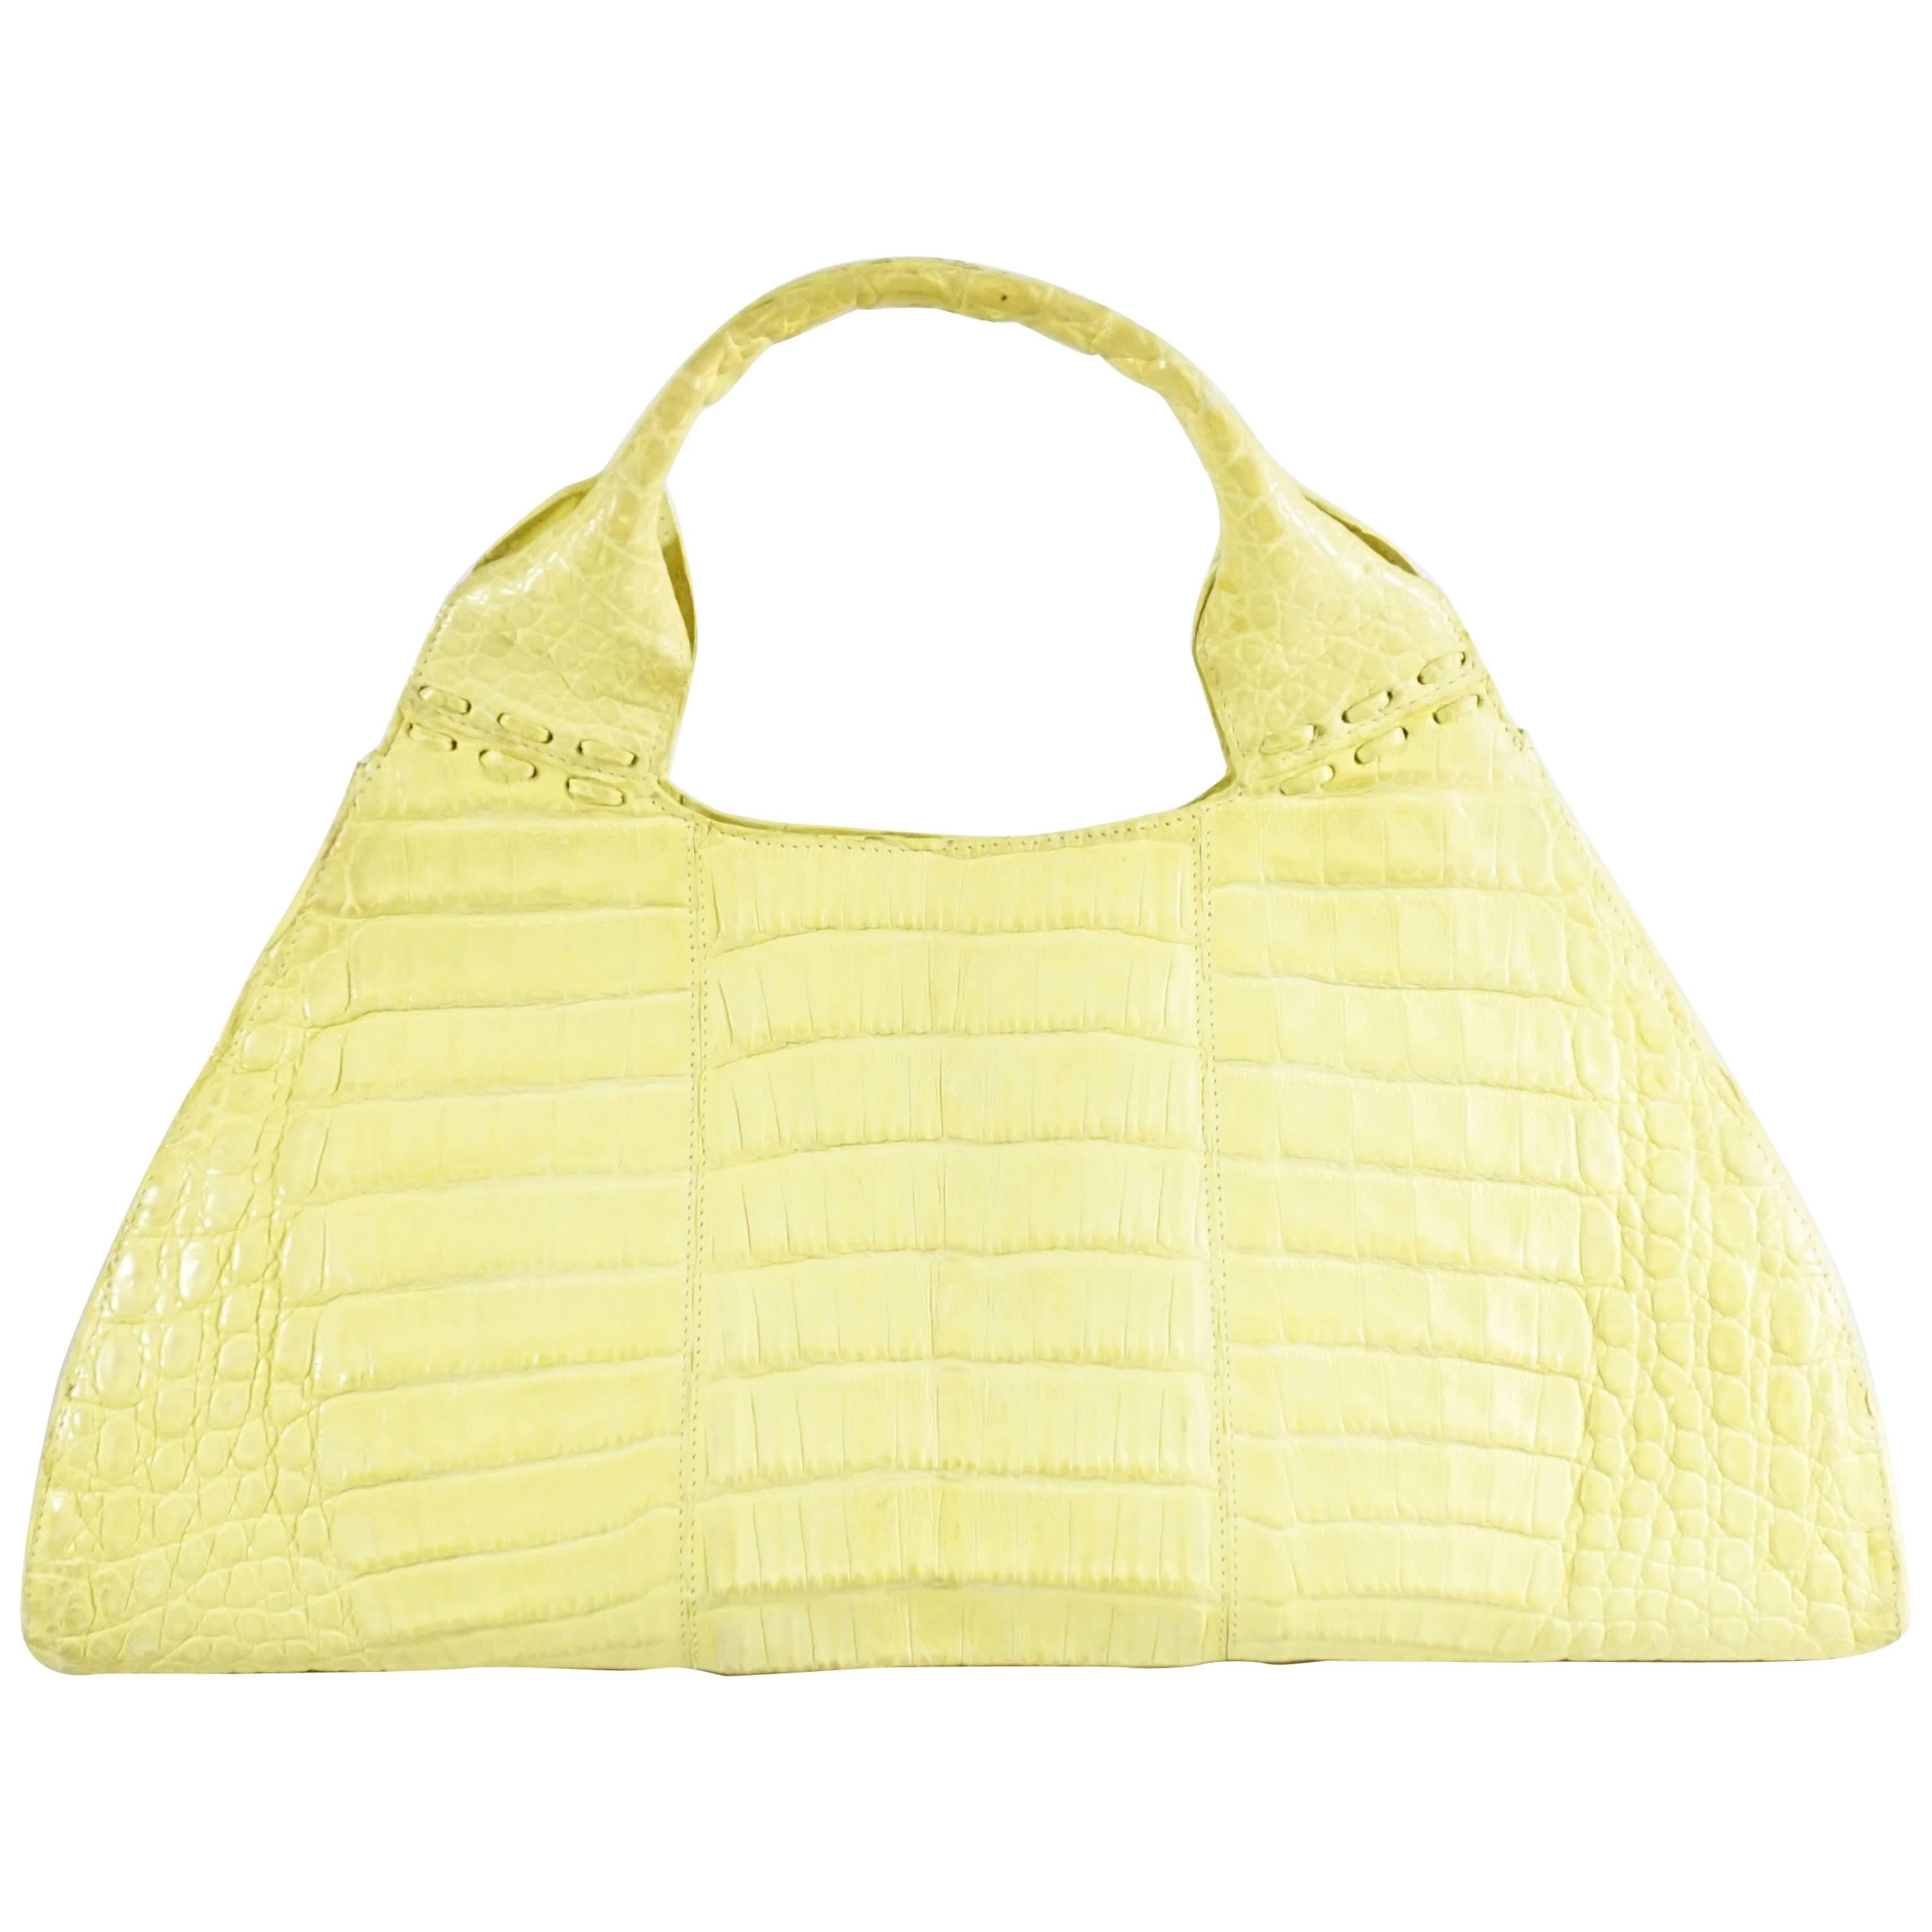 Nancy Gonzalez Yellow Crocodile Top Handle Bag